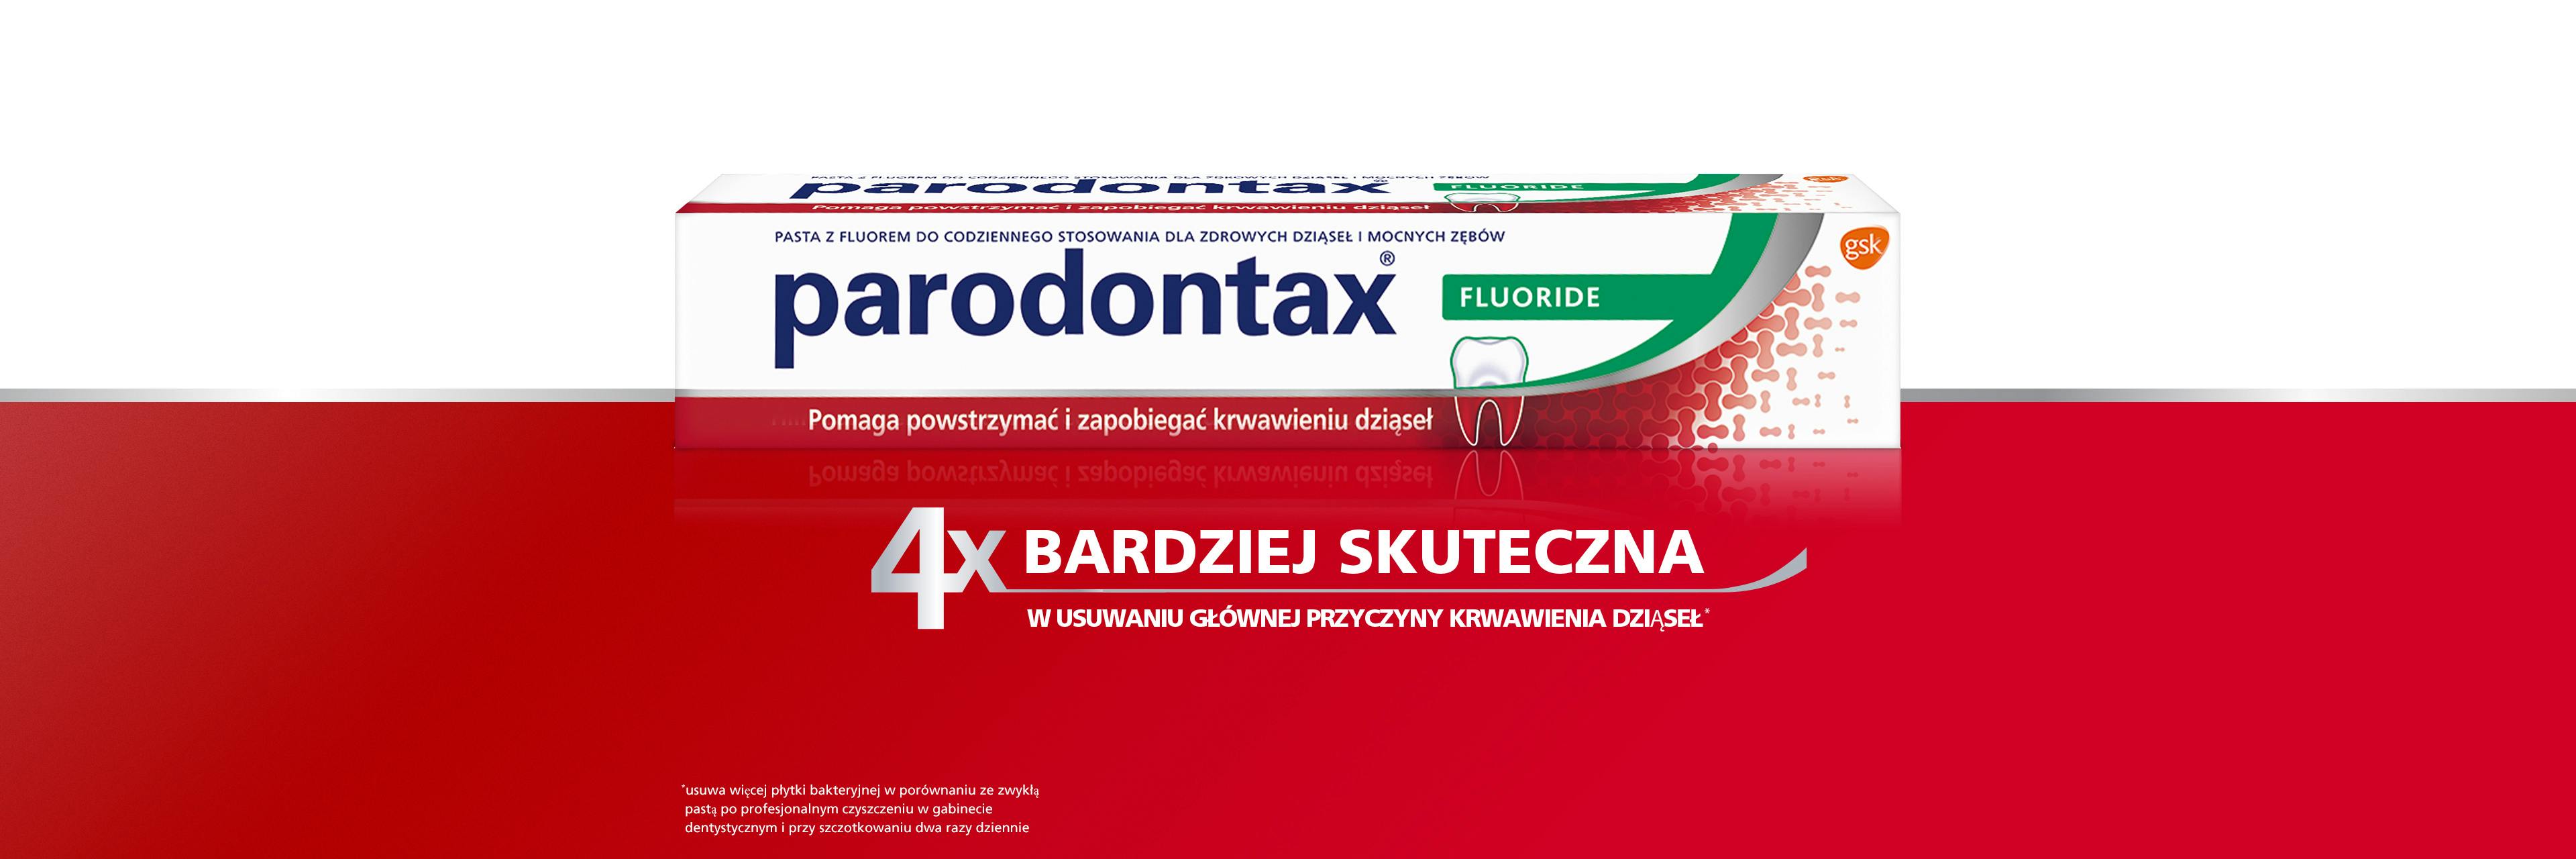 pasta parodontax Fluoride do codziennego użytku